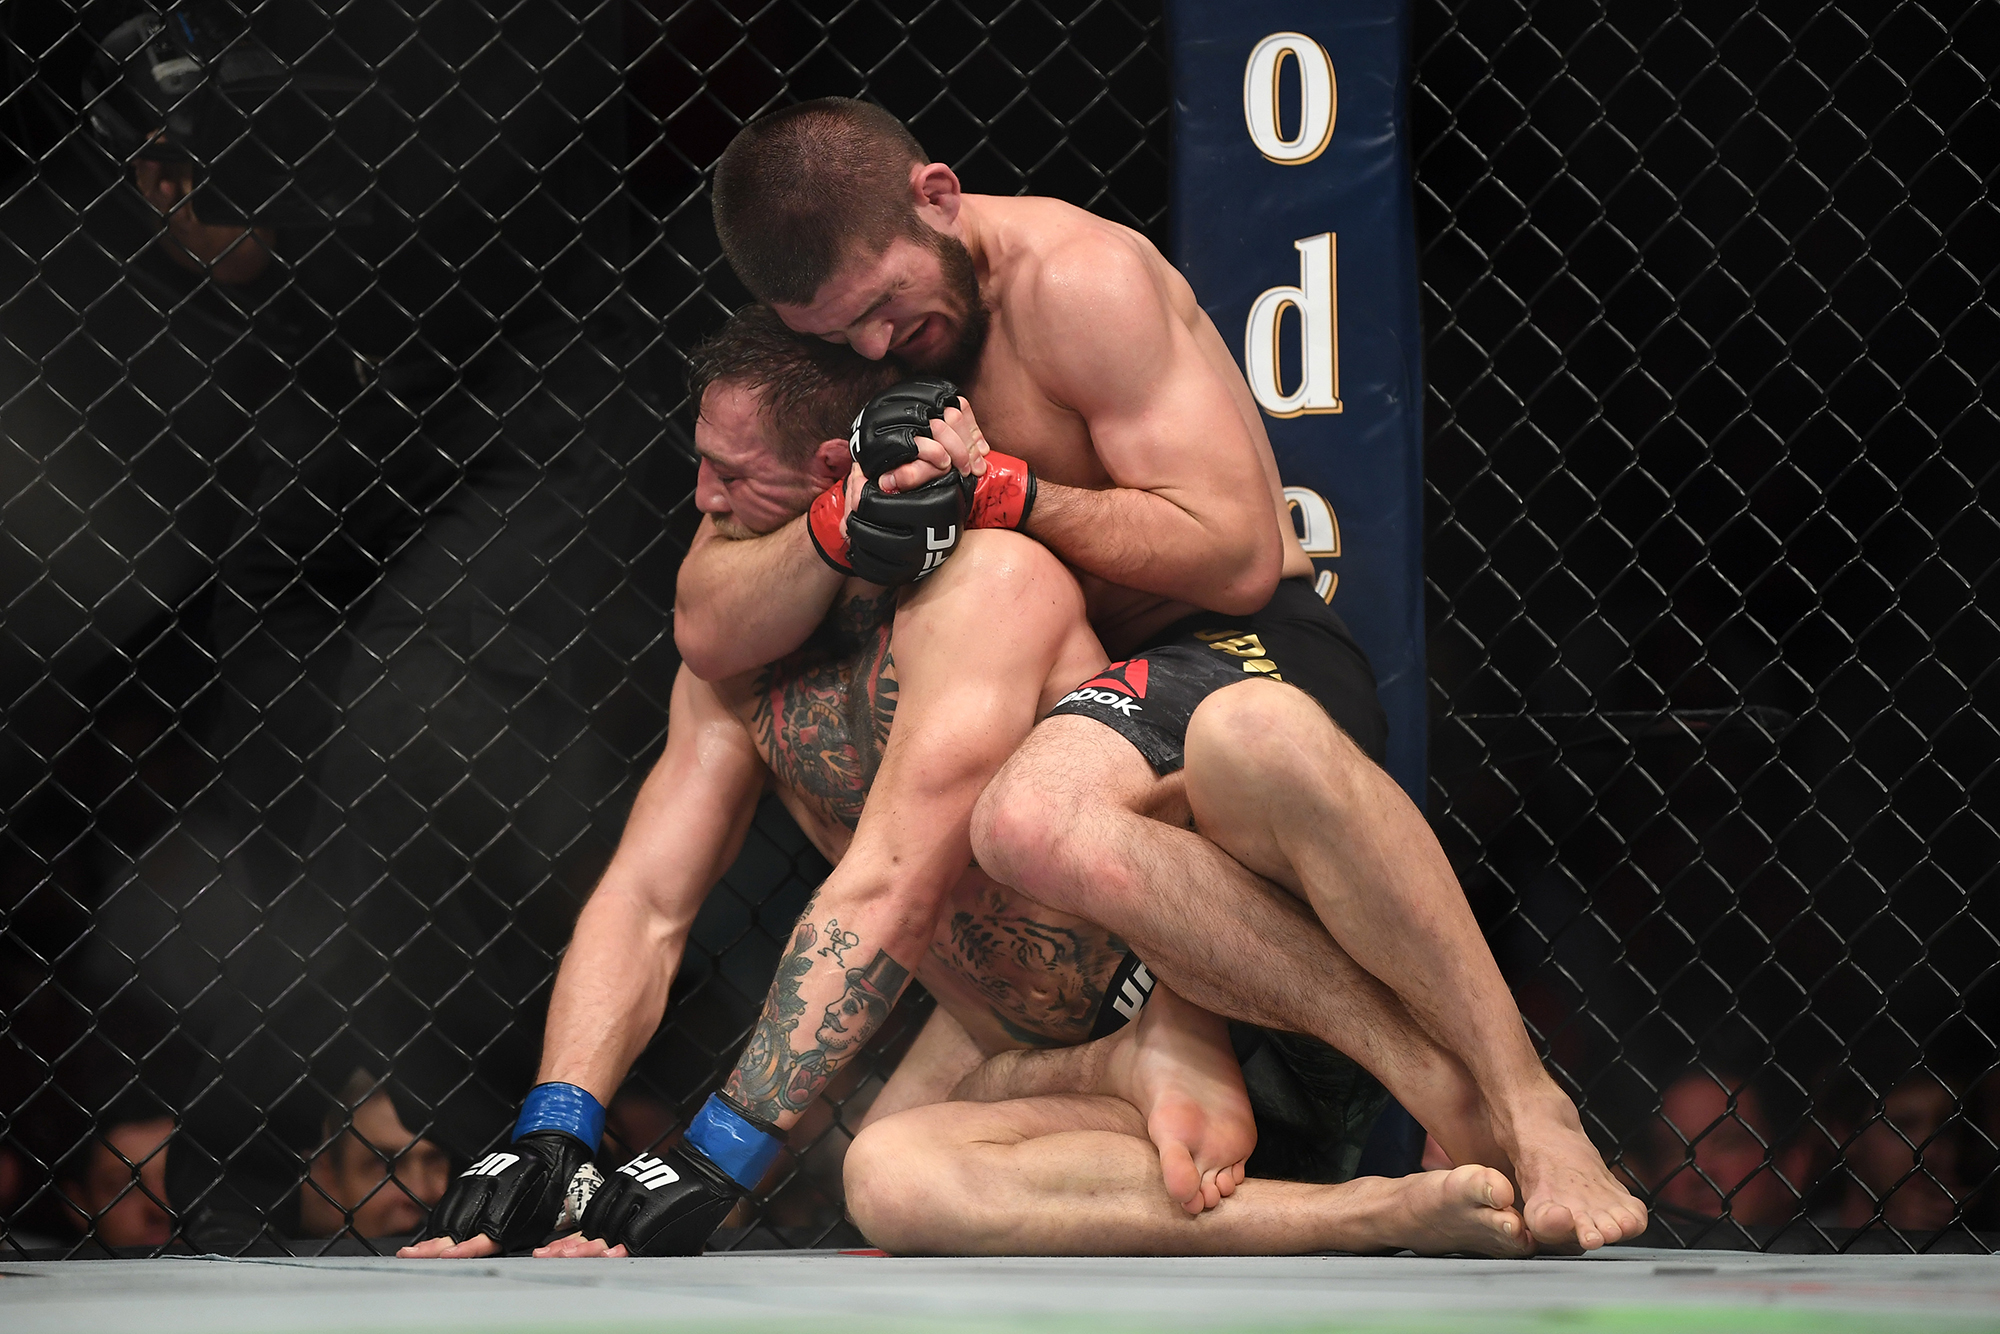 А это Хабиб Нурмагомедов проводит в партере удушающий прием против Конора Макгрегора на UFC 229. Через несколько секунд ирландец сдастся. Источник: Jeff Bottari / Gettyimages